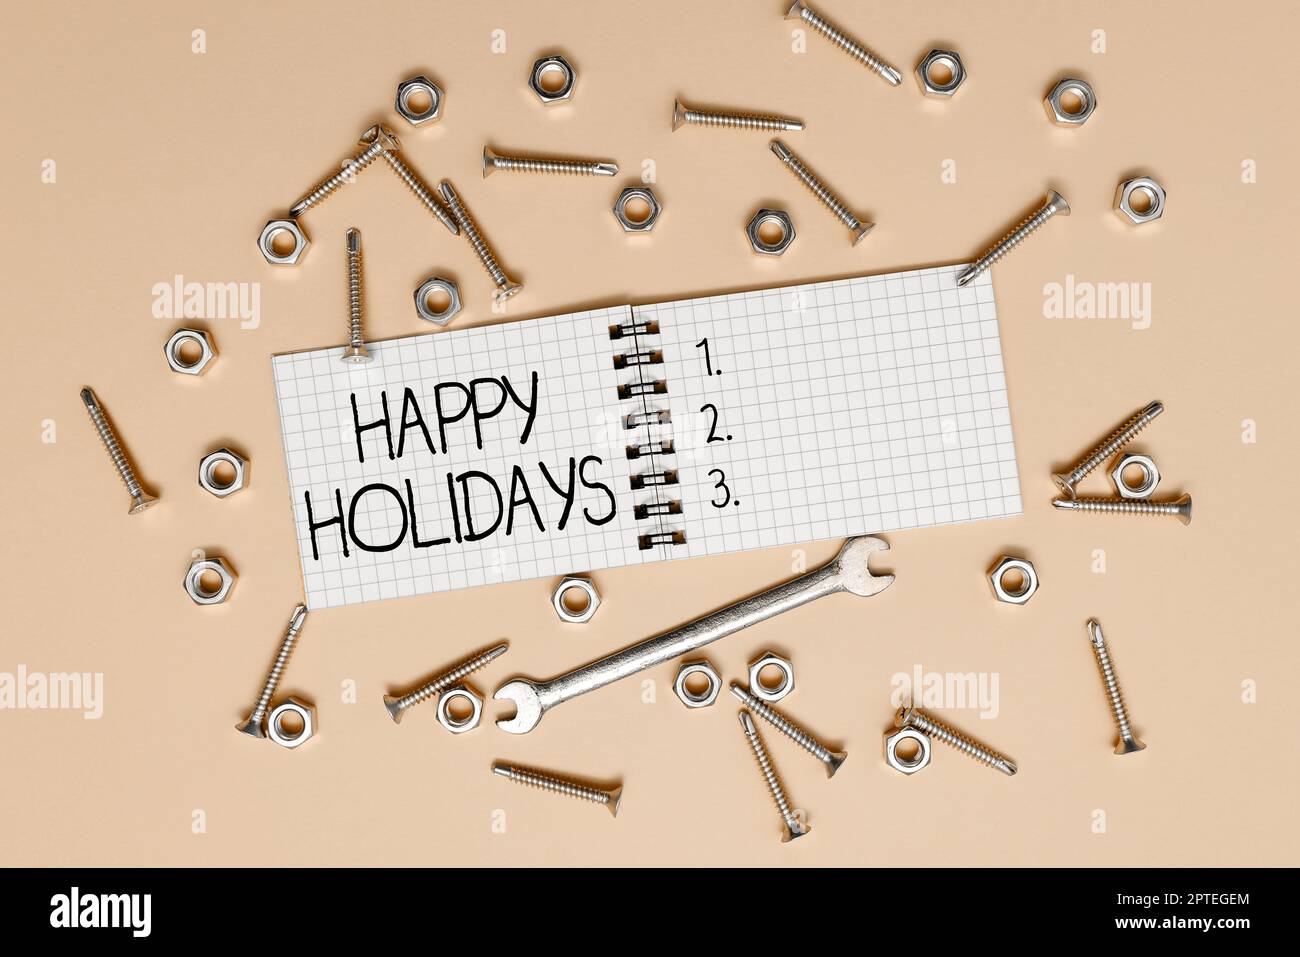 Texte d'écriture Happy Holidays, mot écrit sur le message d'accueil utilisé pour reconnaître la célébration de nombreuses vacances Banque D'Images